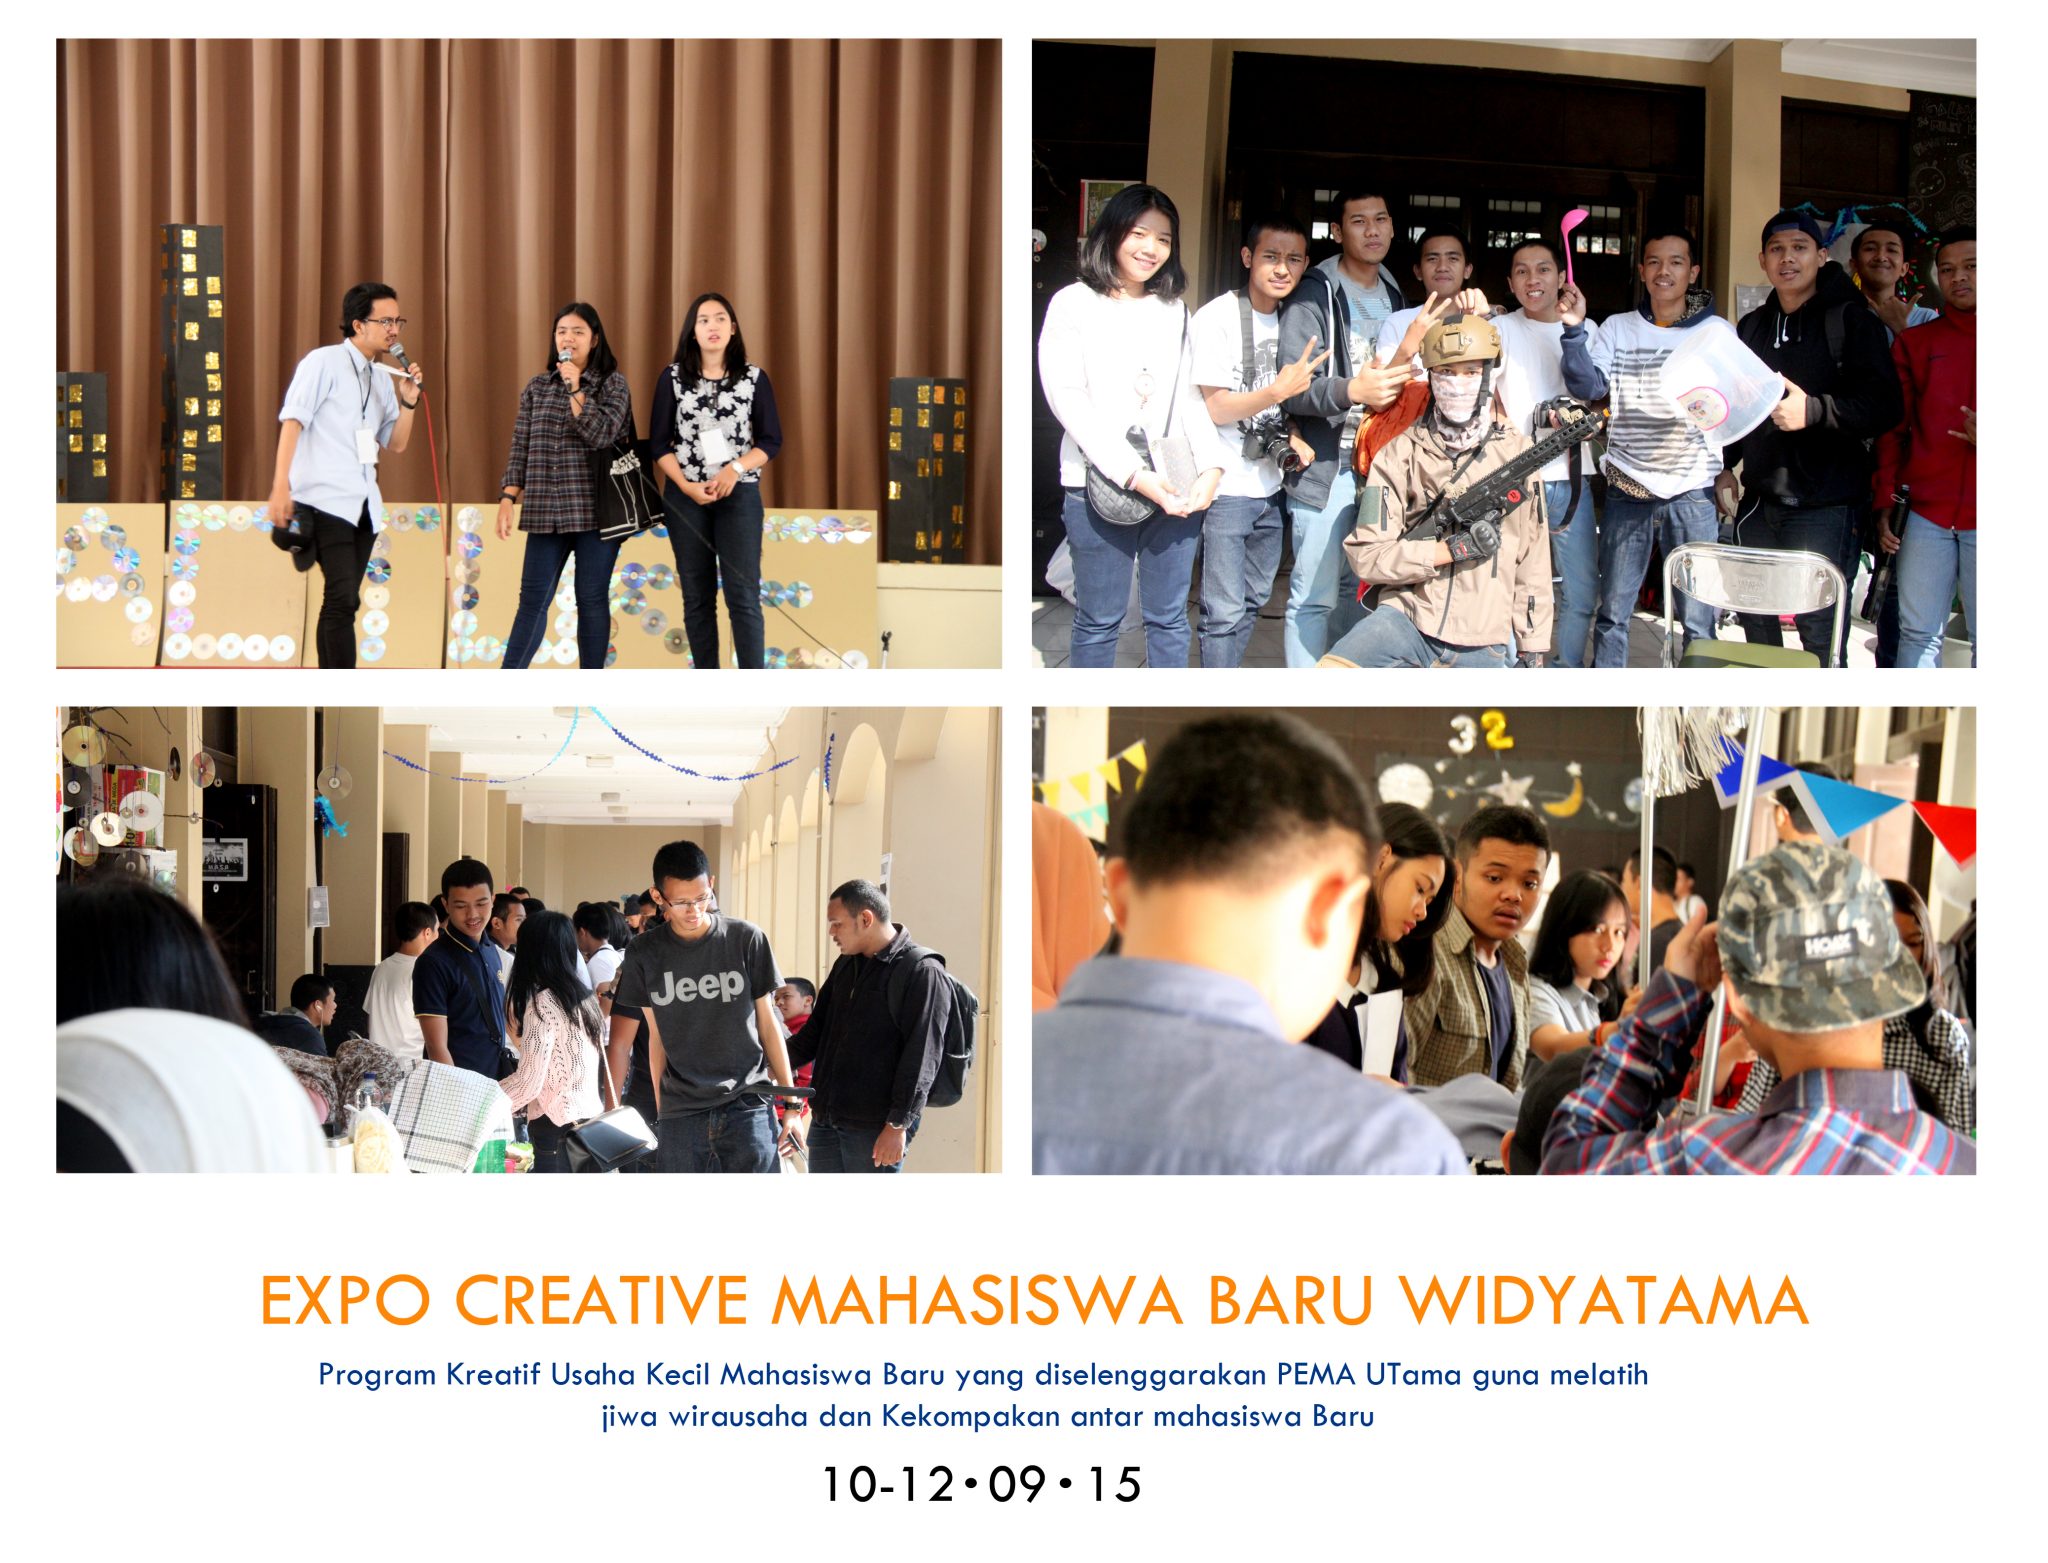 EKSPO report  - Expo Mahasiswa Baru Widyatama : Kekompakan, Inovasi, dan Kreatifitas.